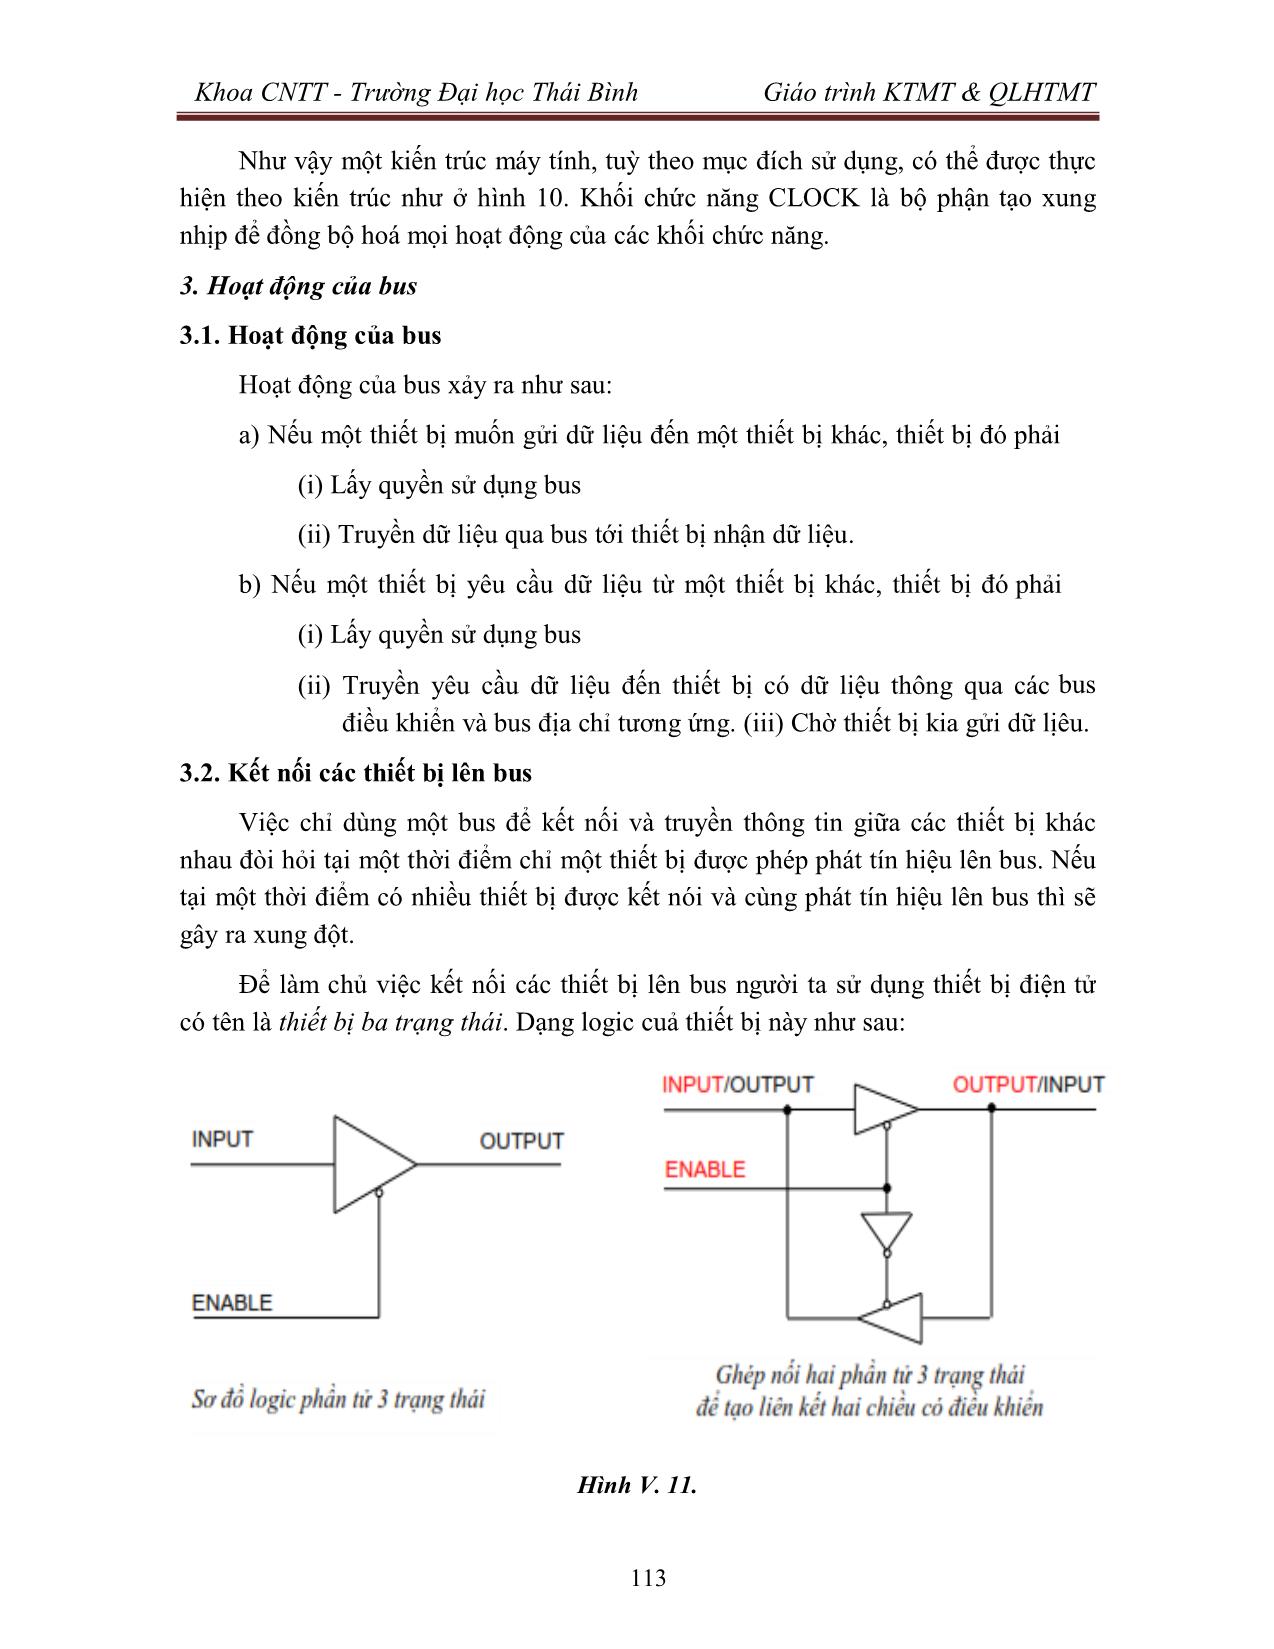 Giáo trình Kiến trúc máy tính & Quản lý hệ thống máy tính (Phần 2) trang 10